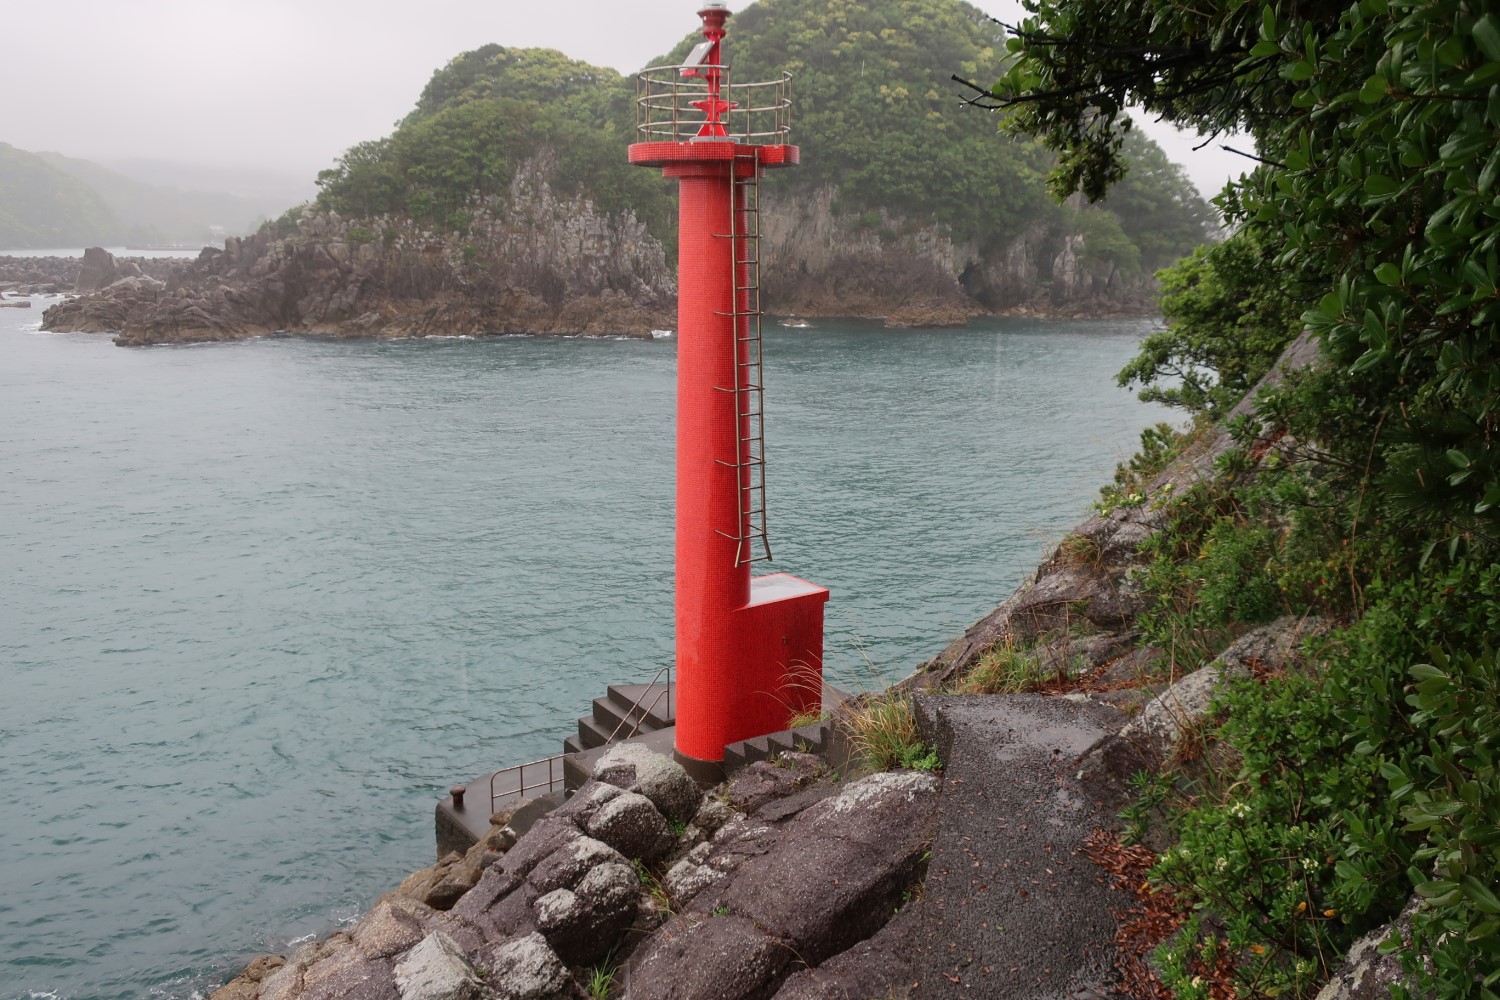 宇久井港口灯台はこれまでの最大難度、雨がさらに輪をかけた